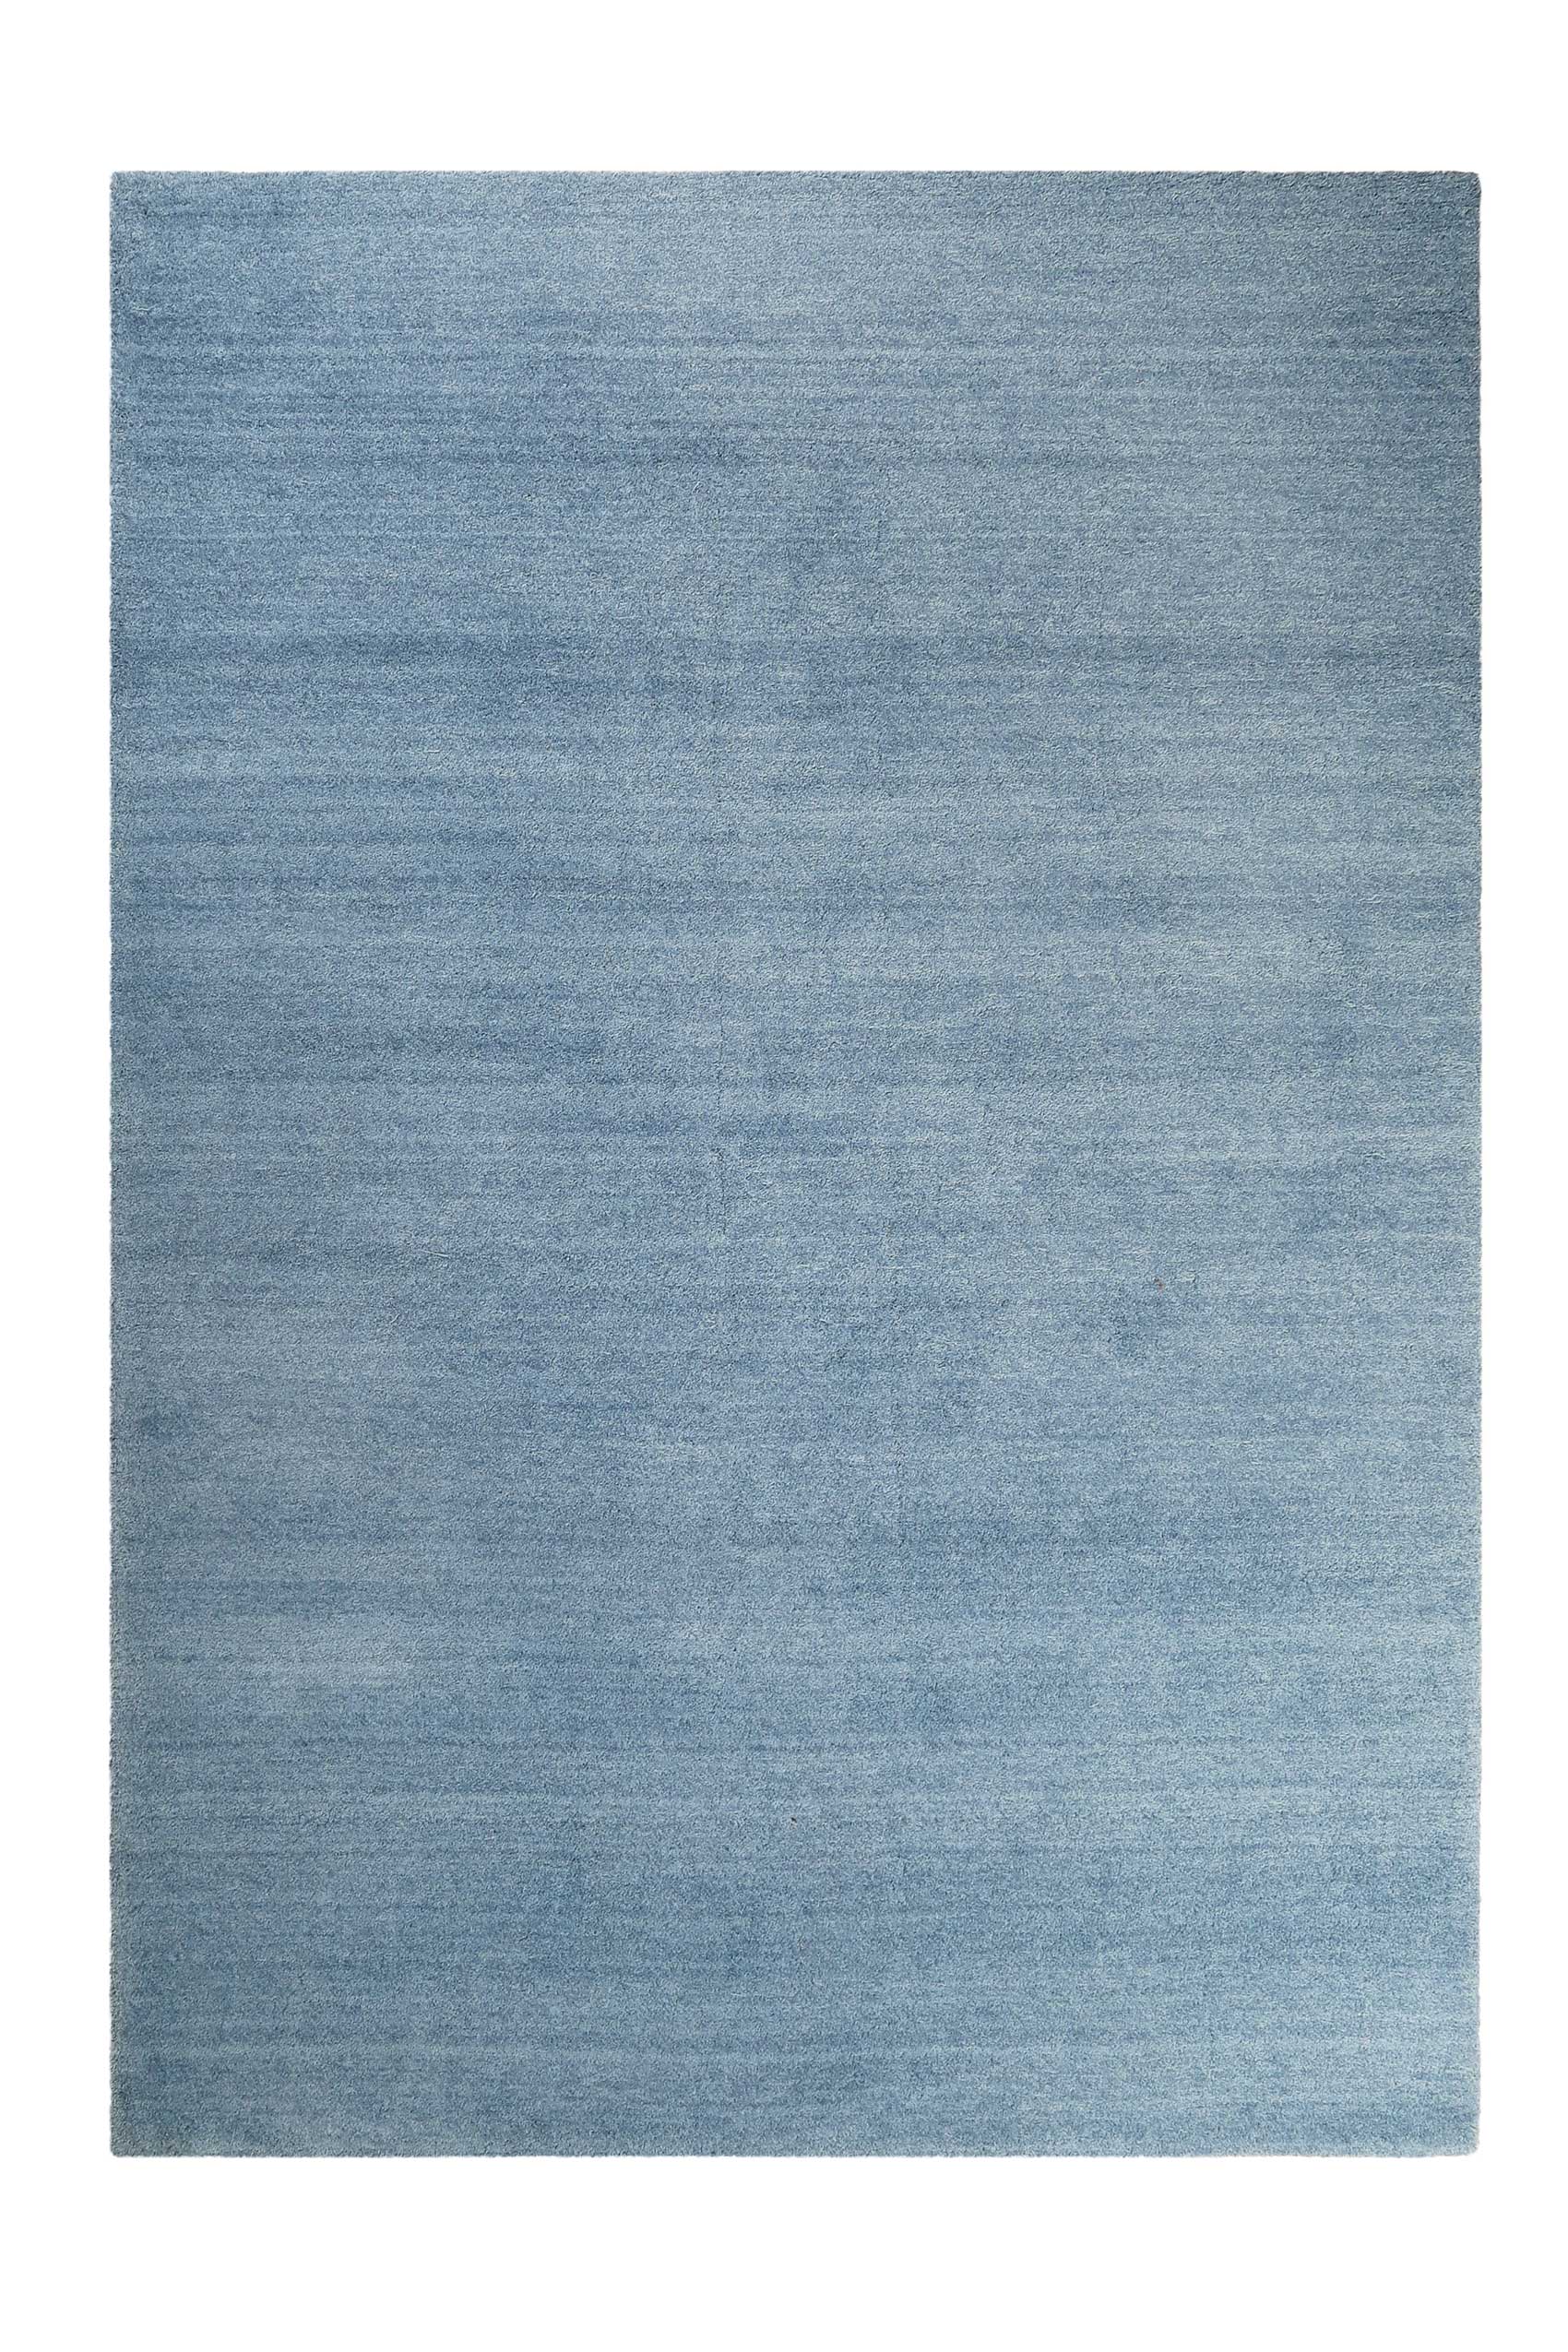 Esprit Teppich Blau meliert Hochflor » Loft « - Ansicht 2